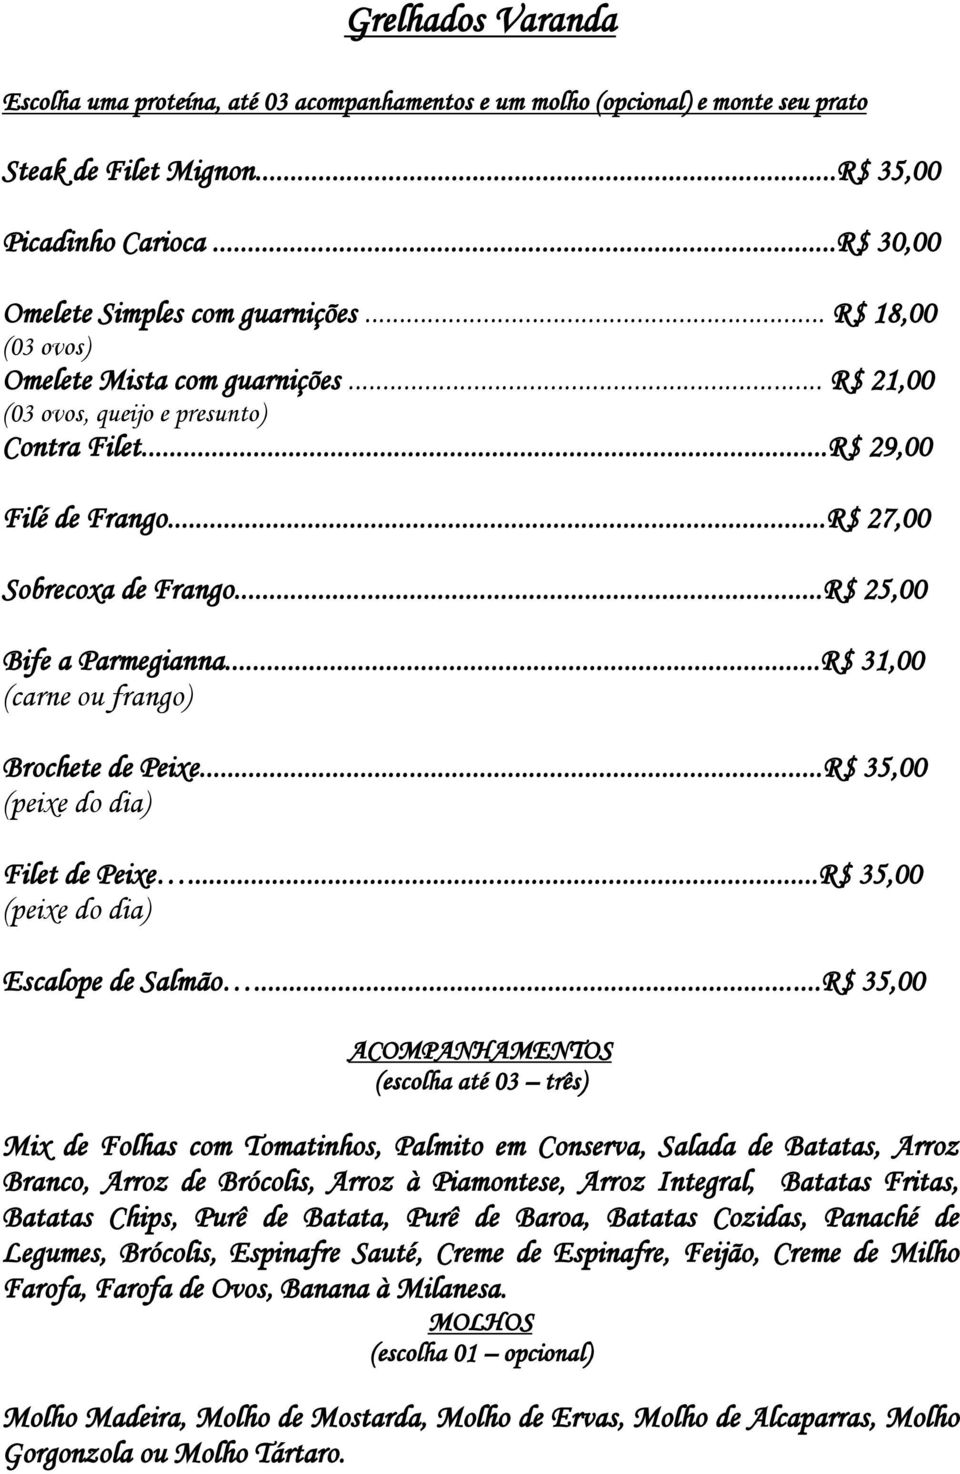 ..R$ 31,00 (carne ou frango) Brochete de Peixe...R$ 35,00 (peixe do dia) Filet de Peixe...R$ 35,00 (peixe do dia) Escalope de Salmão.